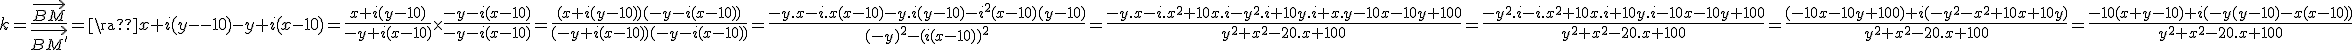 3$k=\frac{\vec{BM}}{\vec{BM^'}}=\frac{x+i(y-10)}{-y+i(x-10)}=\frac{x+i(y-10)}{-y+i(x-10)}\times\frac{-y-i(x-10)}{-y-i(x-10)}=\frac{(x+i(y-10))(-y-i(x-10))}{(-y+i(x-10))(-y-i(x-10))}=\frac{-y.x-i.x(x-10)-y.i(y-10)-i^2(x-10)(y-10)}{(-y)^2-(i(x-10))^2}=\frac{-y.x-i.x^2+10x.i-y^2.i+10y.i+x.y-10x-10y+100}{y^2+x^2-20.x+100}=\frac{-y^2.i-i.x^2+10x.i+10y.i-10x-10y+100}{y^2+x^2-20.x+100}=\frac{(-10x-10y+100)+i(-y^2-x^2+10x+10y)}{y^2+x^2-20.x+100}=\frac{-10(x+y-10)+i(-y(y-10)-x(x-10))}{y^2+x^2-20.x+100}